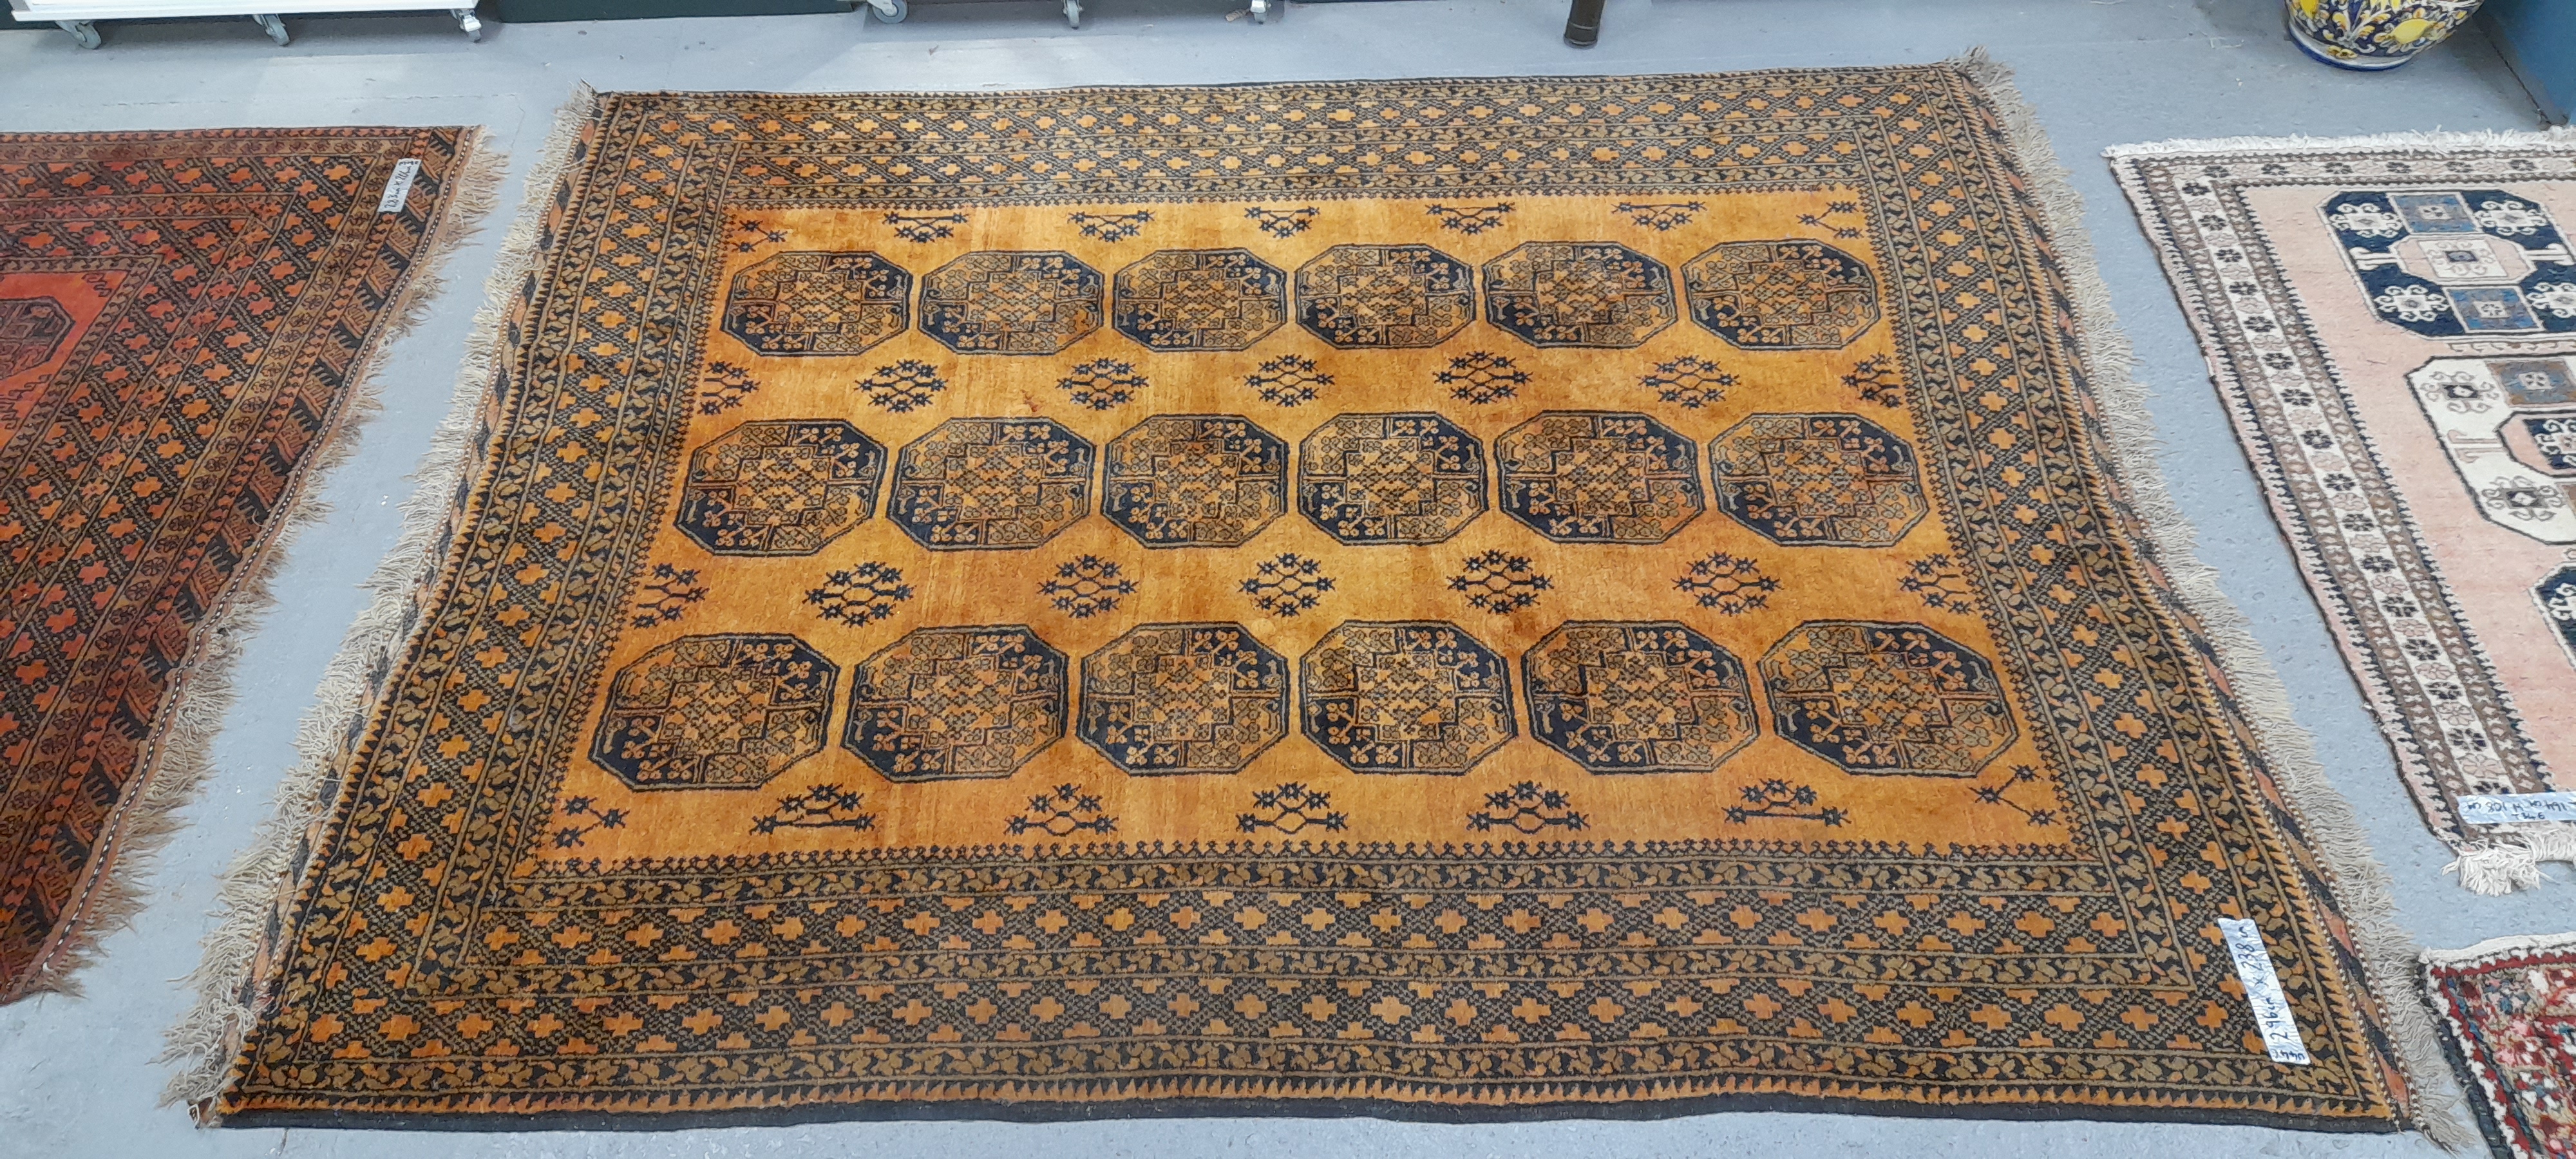 AN AFGHAN BOKHARA CARPET 296 x 238 cm